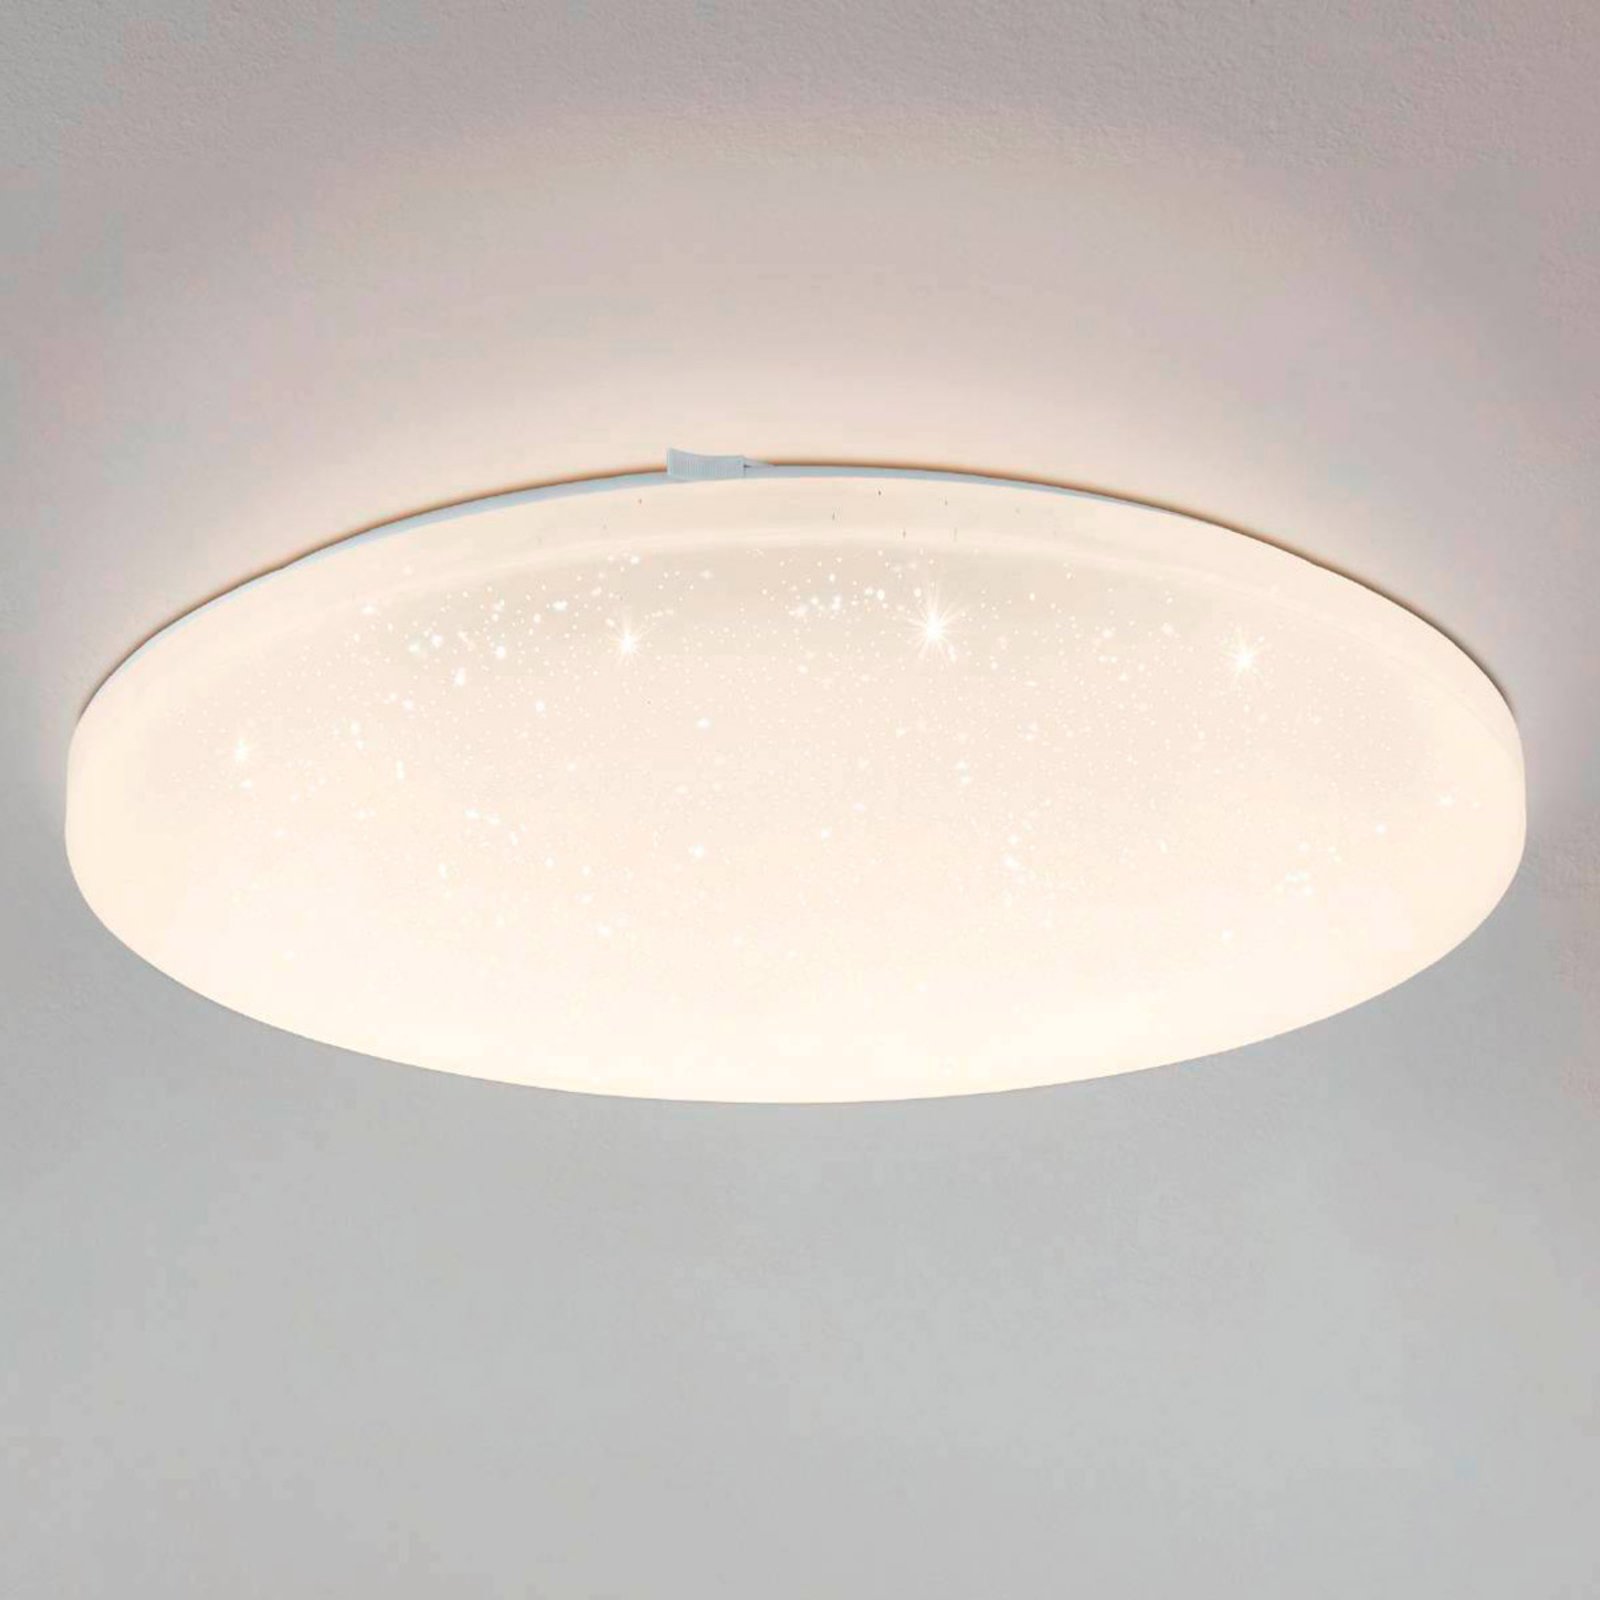 Lampa sufitowa LED Frania-S efekt kryształu Ø 43cm